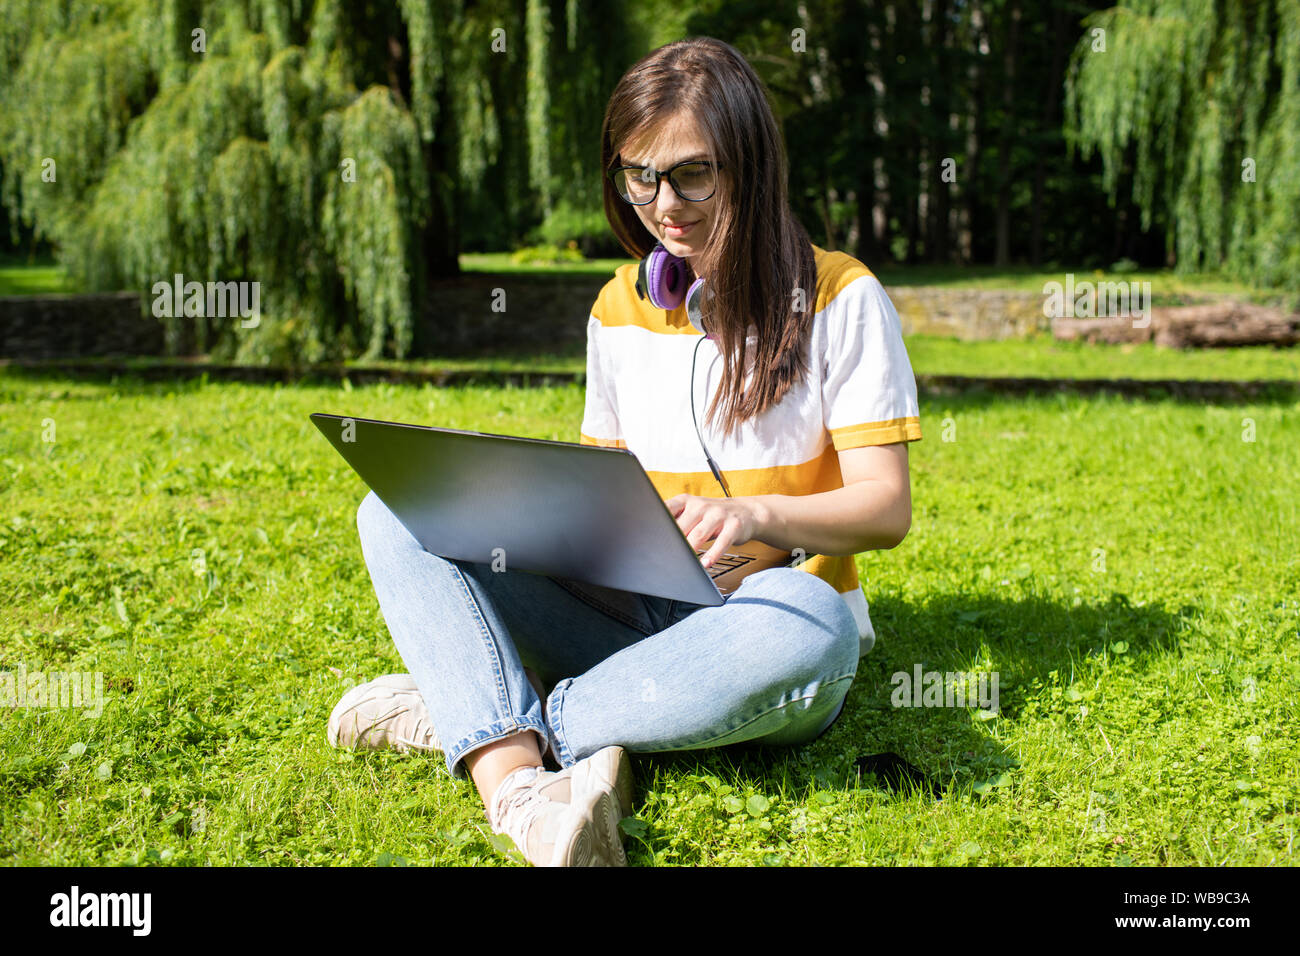 Belle jeune brunette woman with laptop sitting on park lawn Banque D'Images